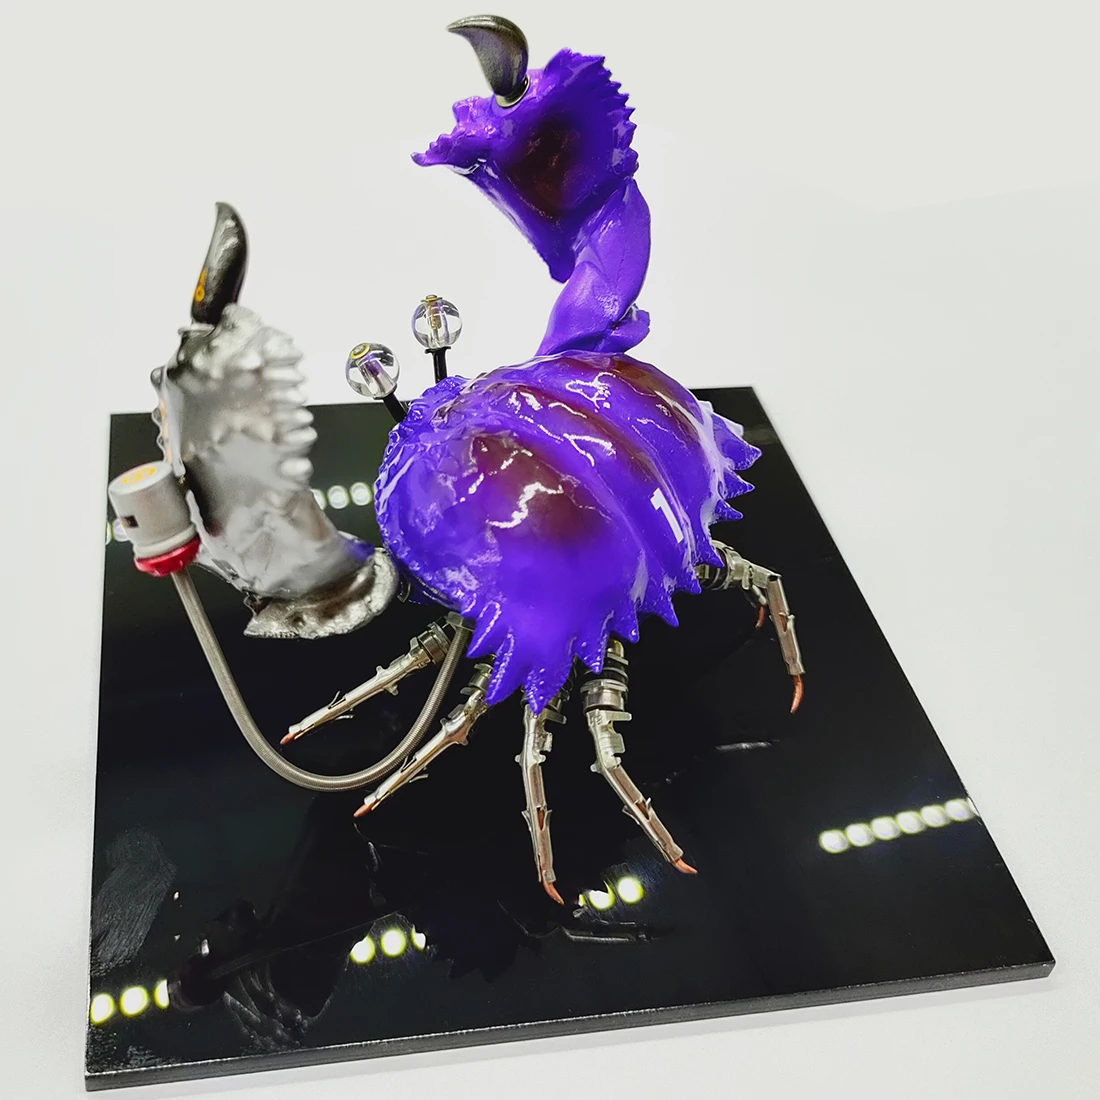 Punk Tarzı Mekanik Yengeç Modeli 3D Metal El Sanatları Ev Dekorasyonu İçin Eğitici oyuncak Çocuk Oyuncakları İçin-Mor (Bitmiş )